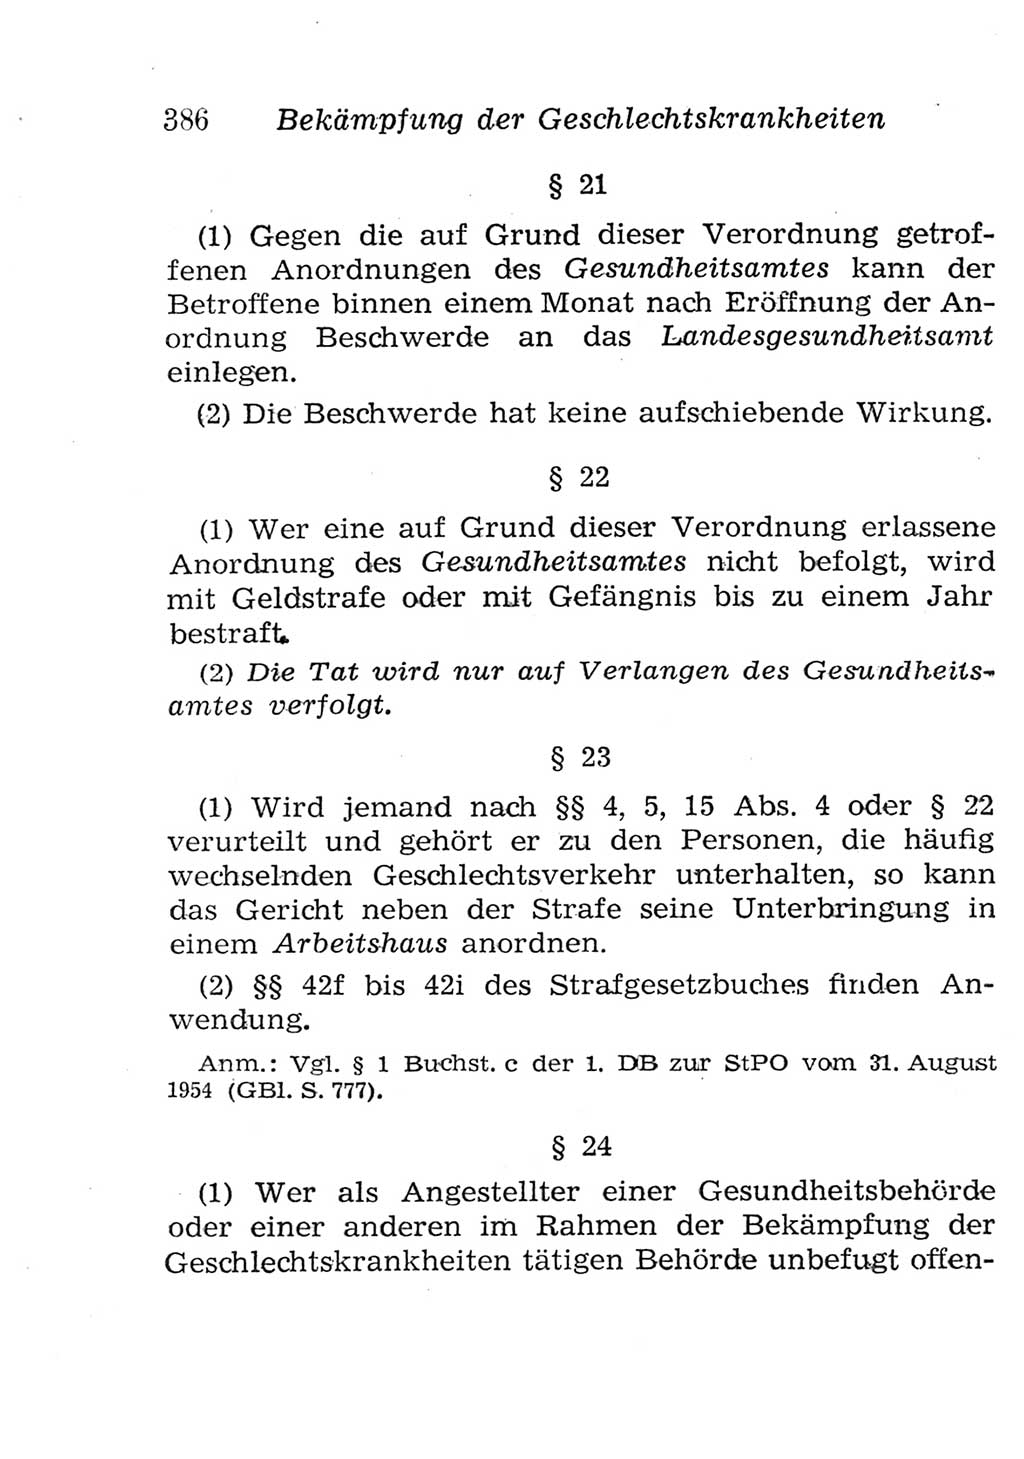 Strafgesetzbuch (StGB) und andere Strafgesetze [Deutsche Demokratische Republik (DDR)] 1957, Seite 386 (StGB Strafges. DDR 1957, S. 386)